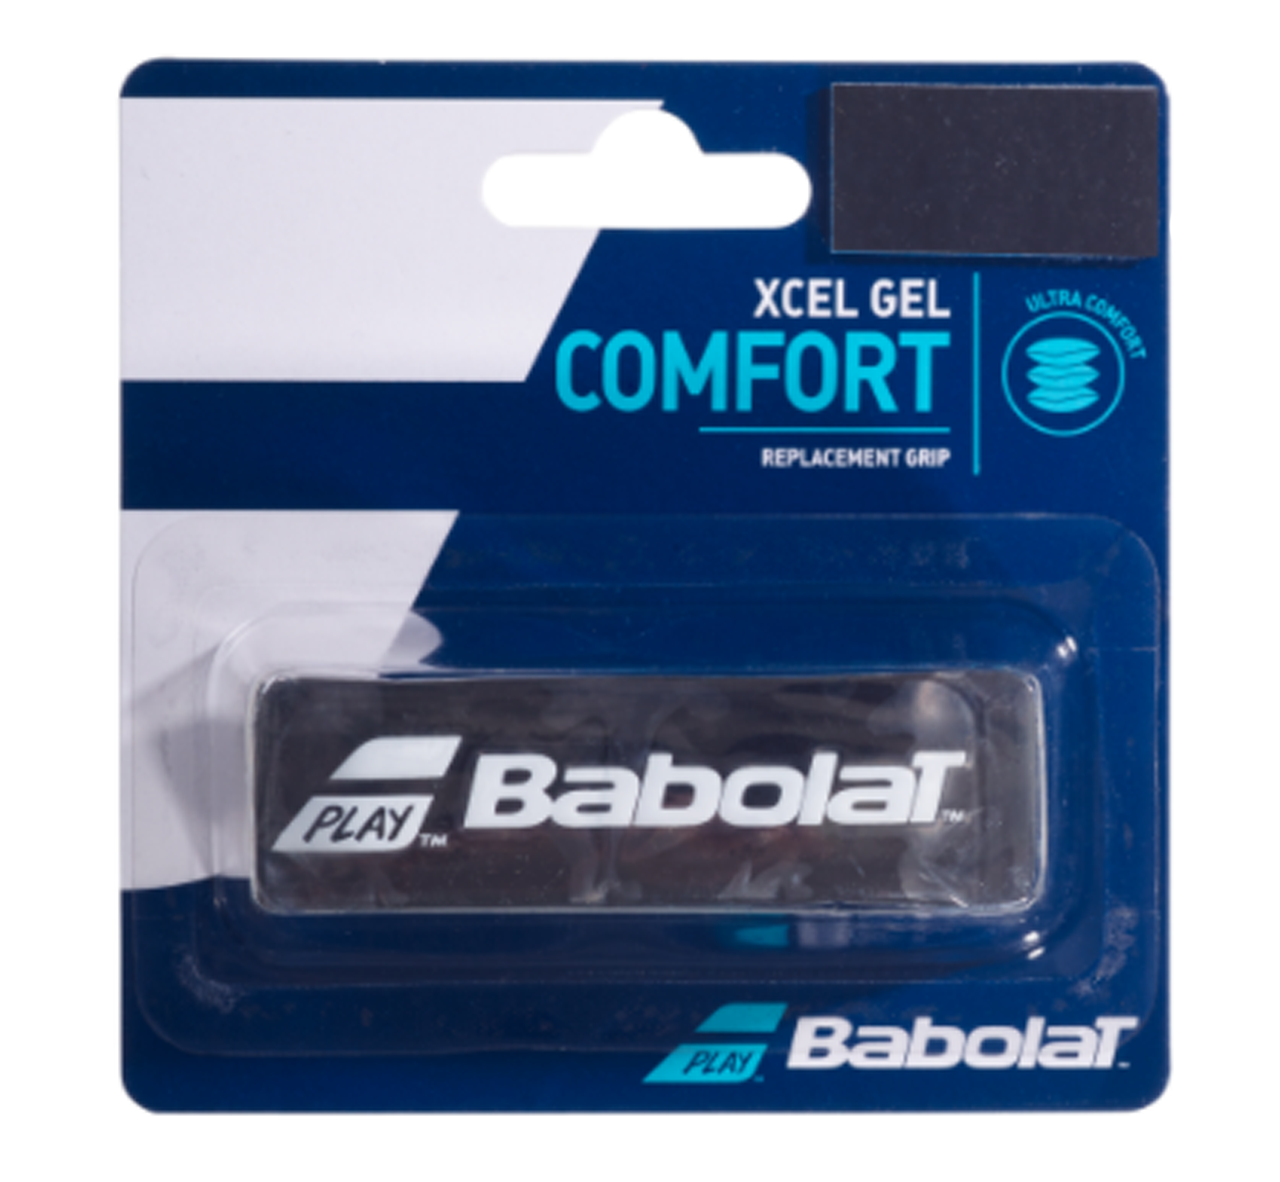 Tennis Griffband Xcel Gel Comfort Overgrip